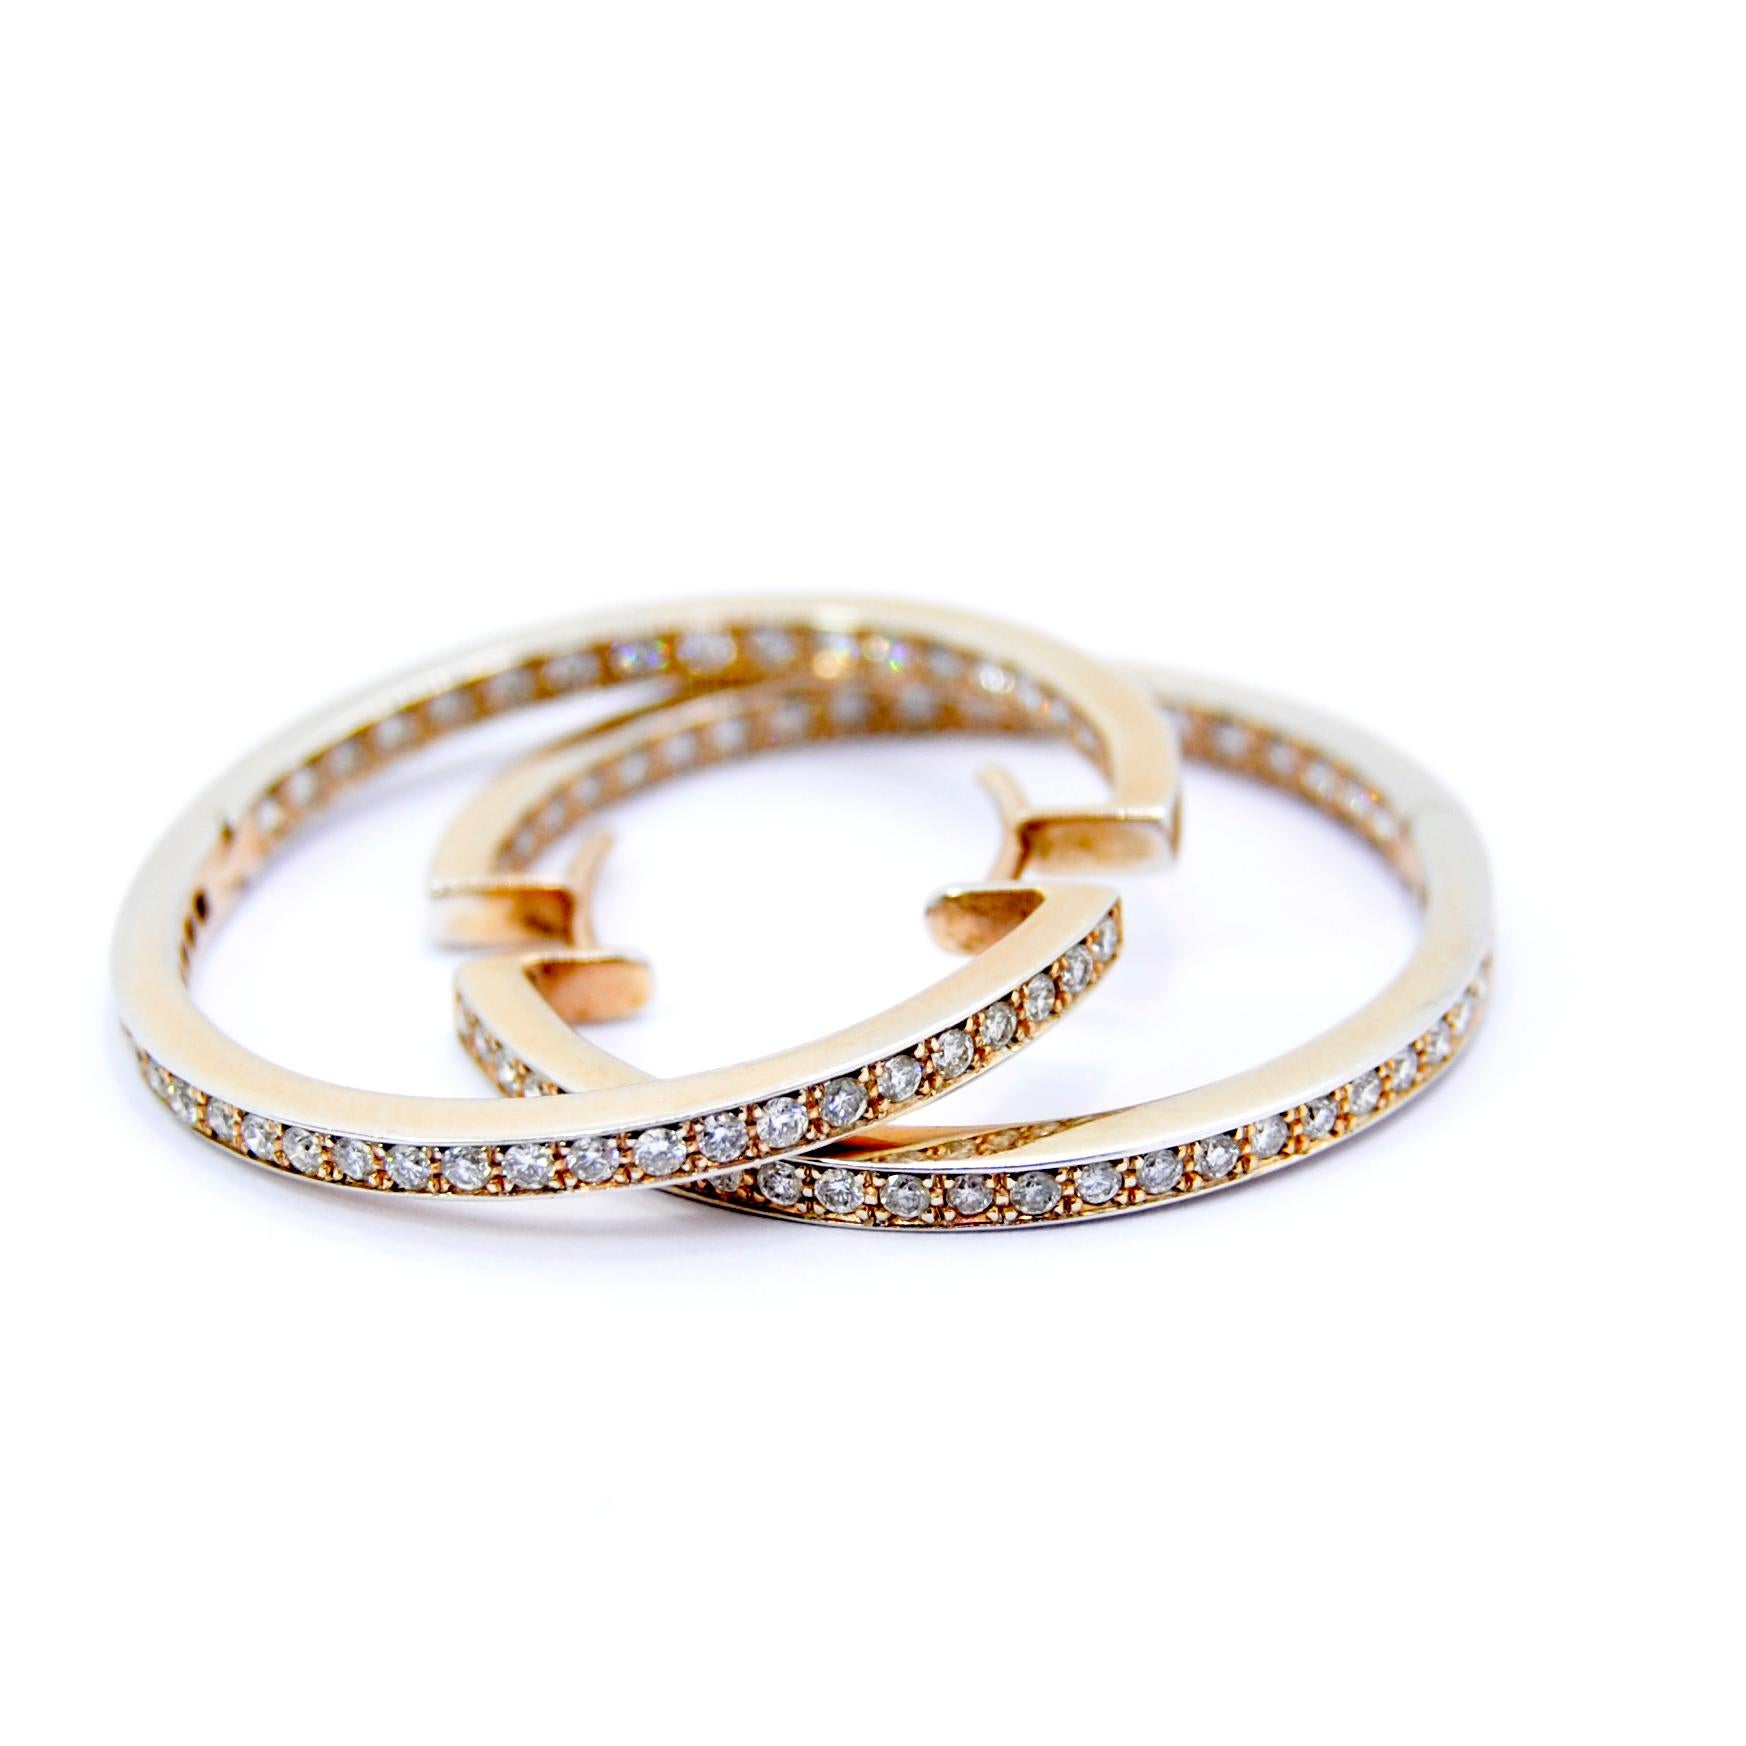 Klassische Diamant-Ohrringe aus Weiß- und Gelbgold
Insgesamt 1,60ct Diamanten 
Und 9,7 Gramm Gold 
Sehr guter Verschluss und er passt sich sehr gut an das Ohrläppchen an